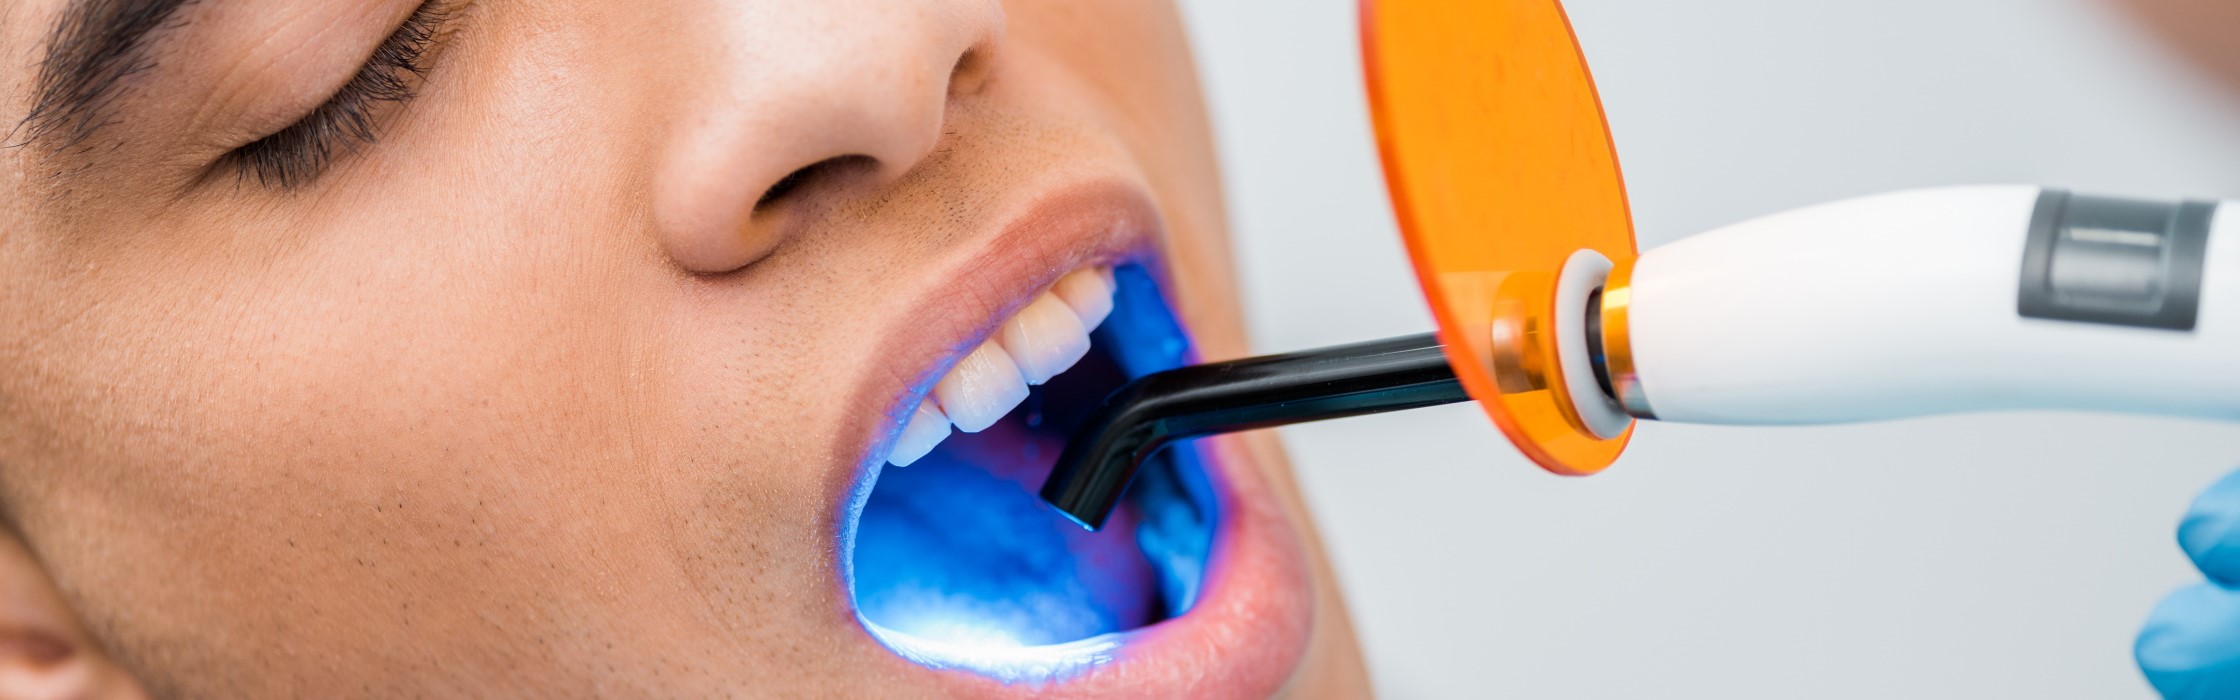 Laserbehandlung beim Zahnarzt: vielfältige Einsatzgebiete